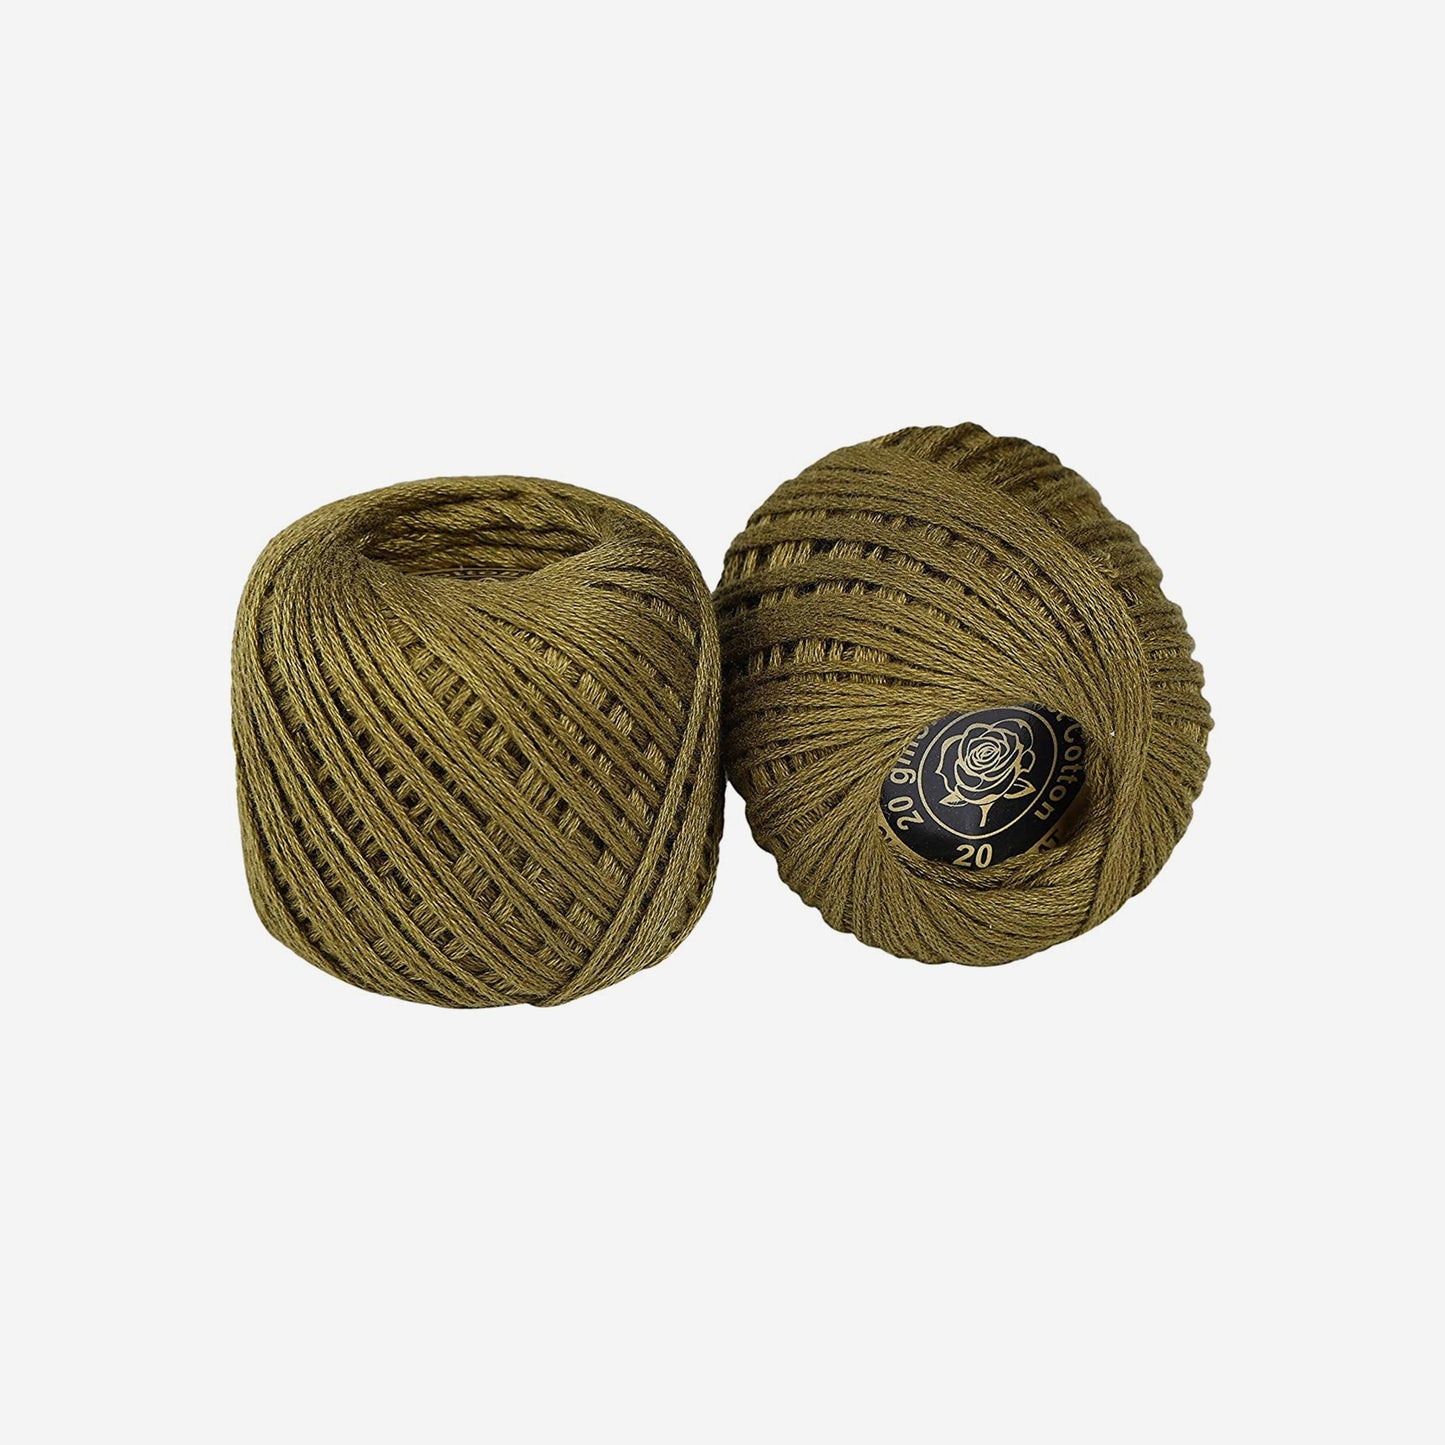 Hand-crochet hoops (Variation 8)